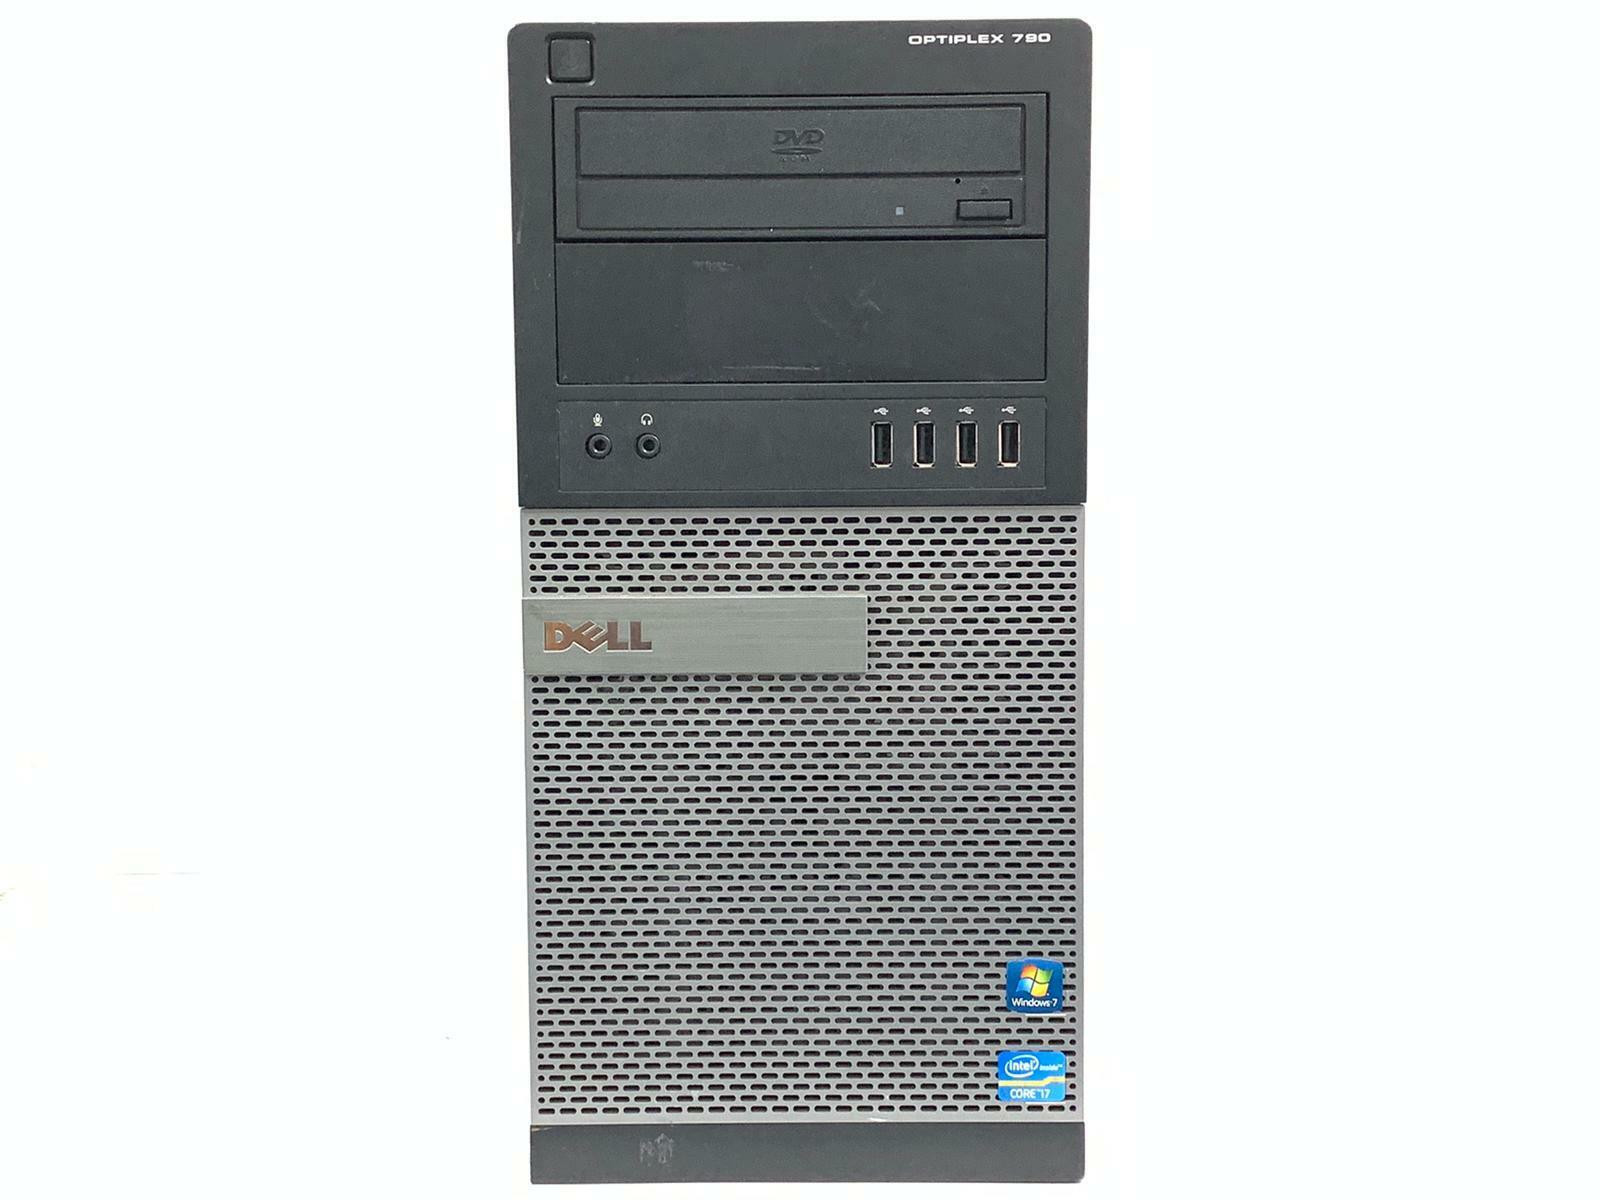 Dell OptiPlex 990 MT Core i7 2600 3.4 GHz 16GB RAM  256GB SSD Windows 10 PRO